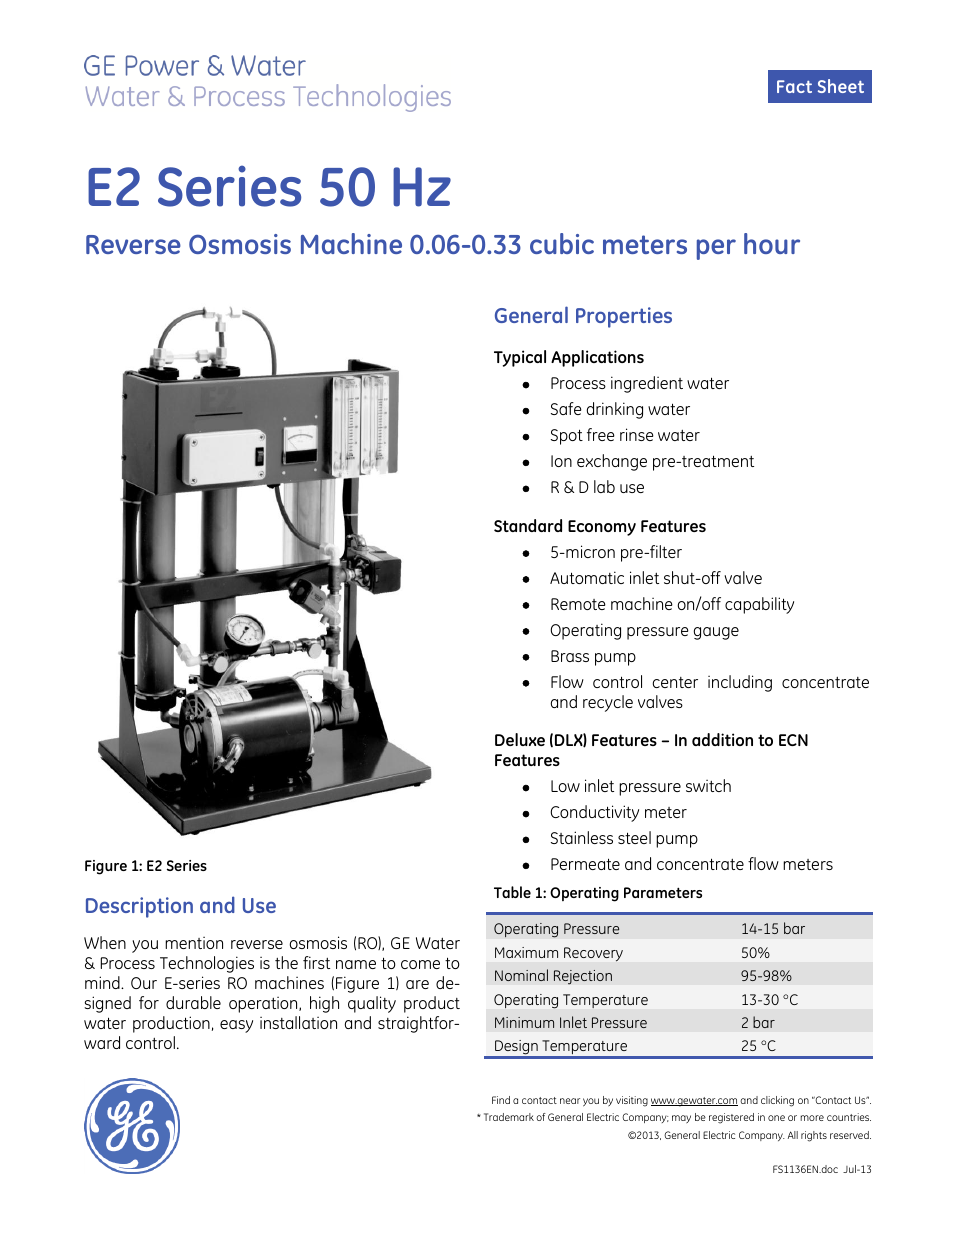 E-Series Reverse Osmosis - E2 50 Hz